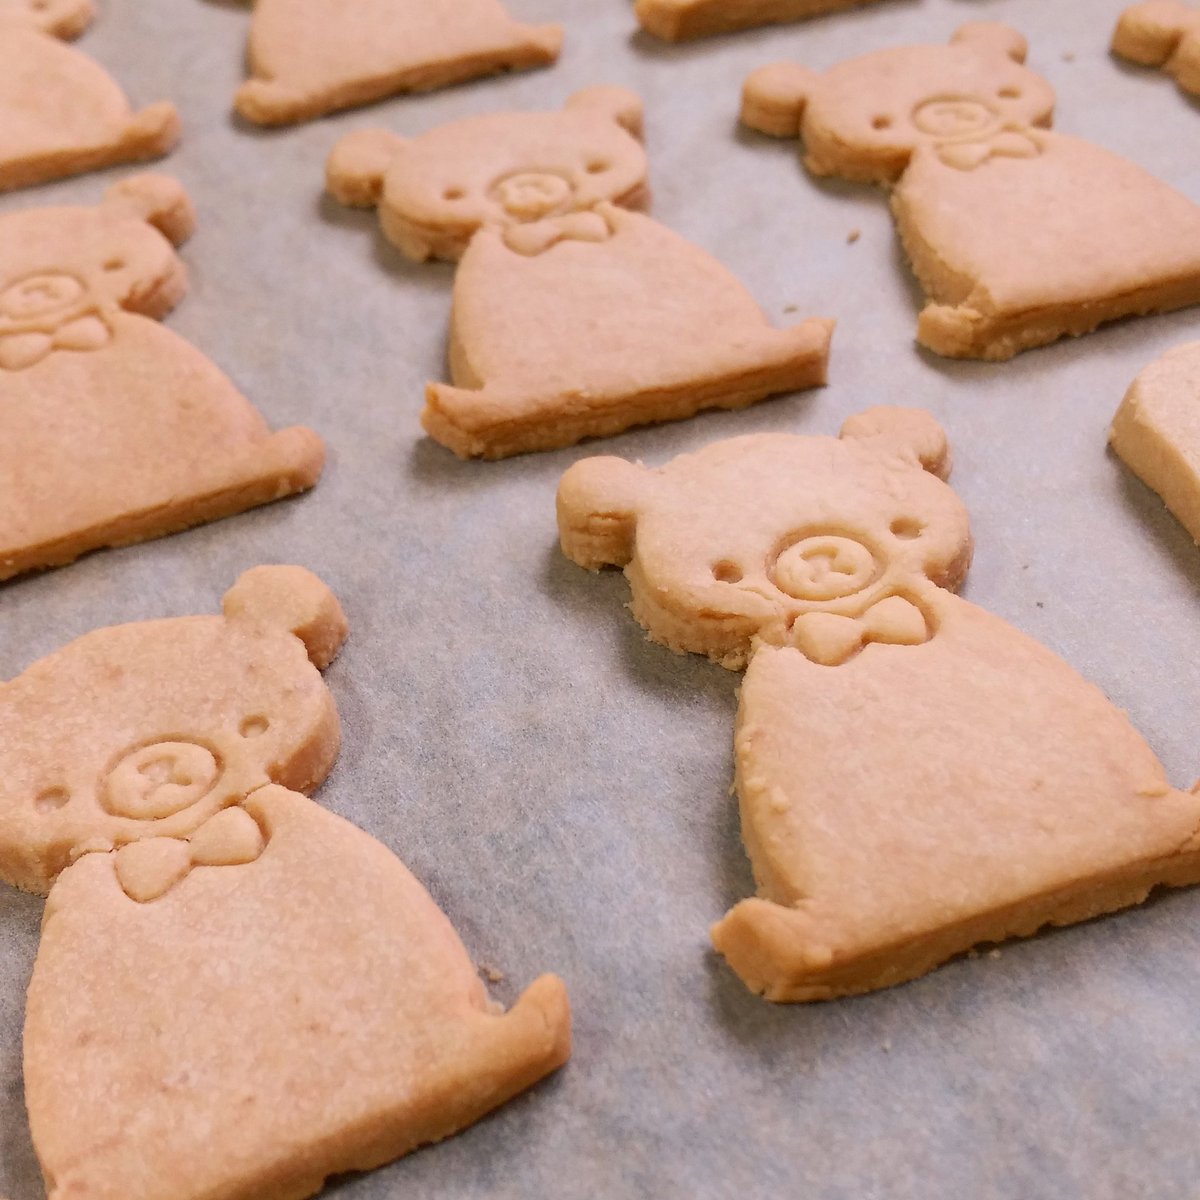 Yui ブログ更新 3dプリンターでのクッキー型作り の作り方を簡単にまとめました オリジナルのクッキーを作ってみたい方や 興味のある方は参考にどうぞ 3dプリンターでクッキー型を作ってみた T Co Nhve6ydi0g バレンタイン Tukuddo